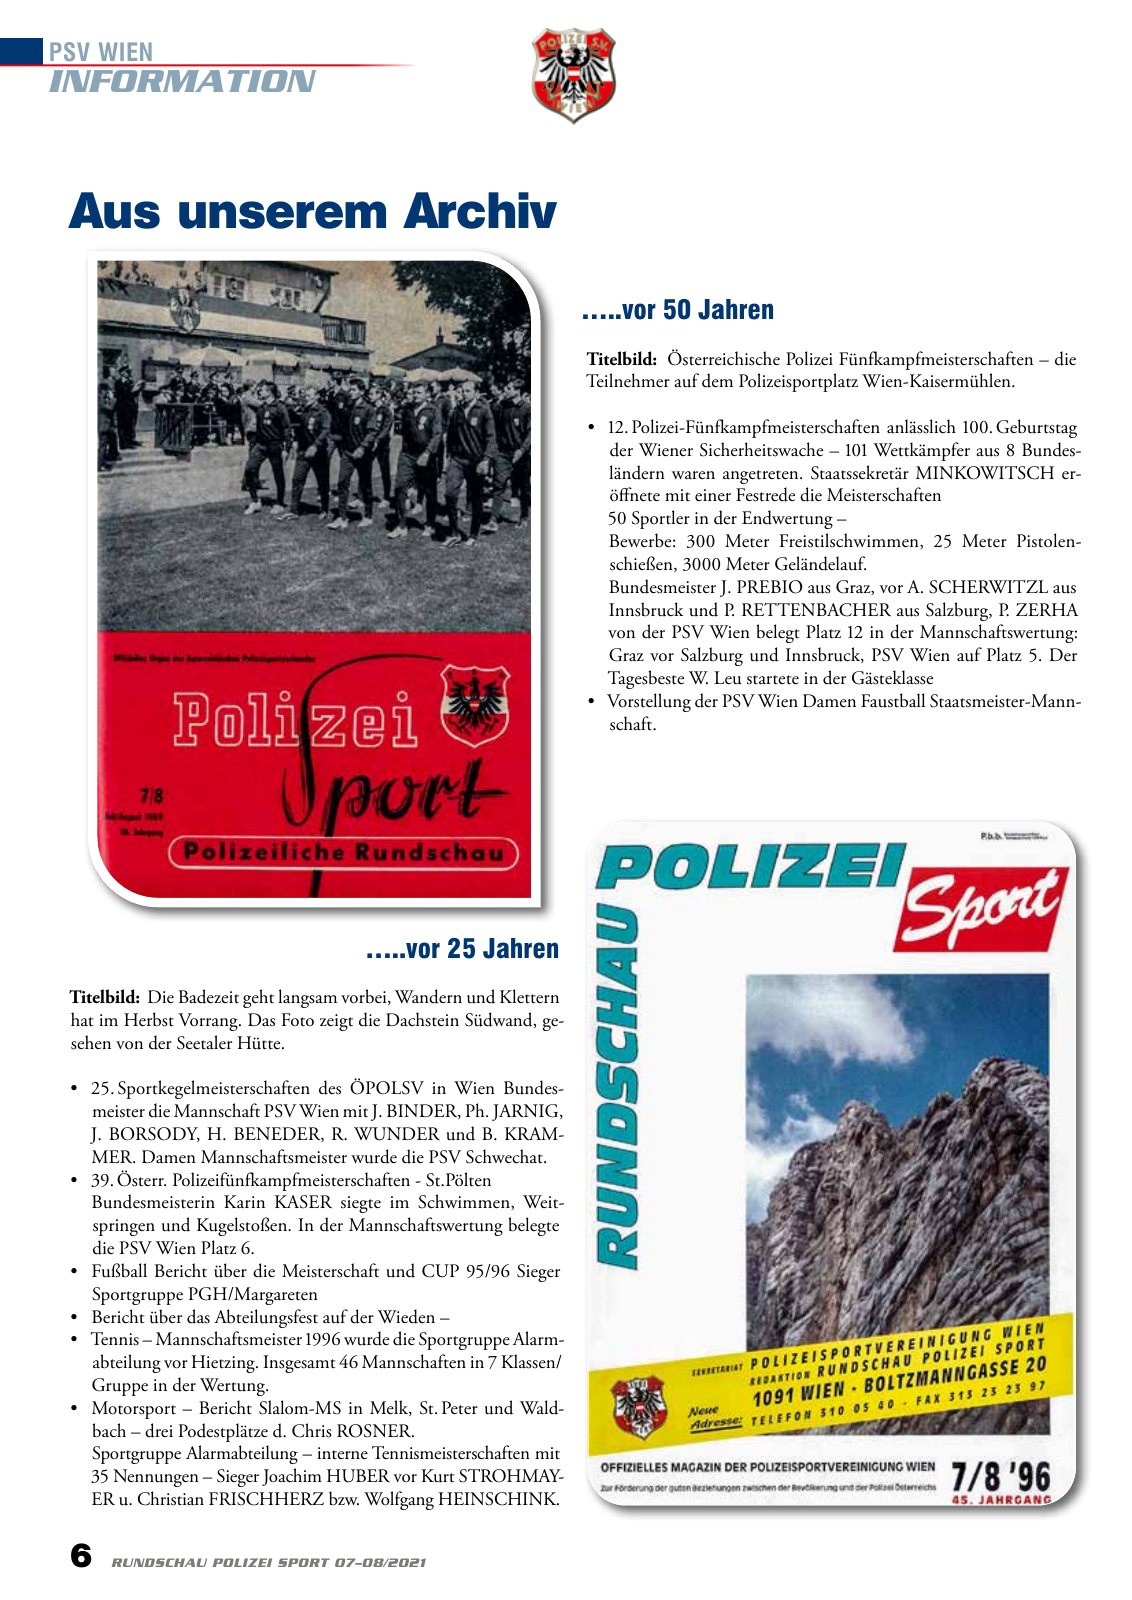 Vorschau Rundschau Polizei Sport 07-08/2021 Seite 6